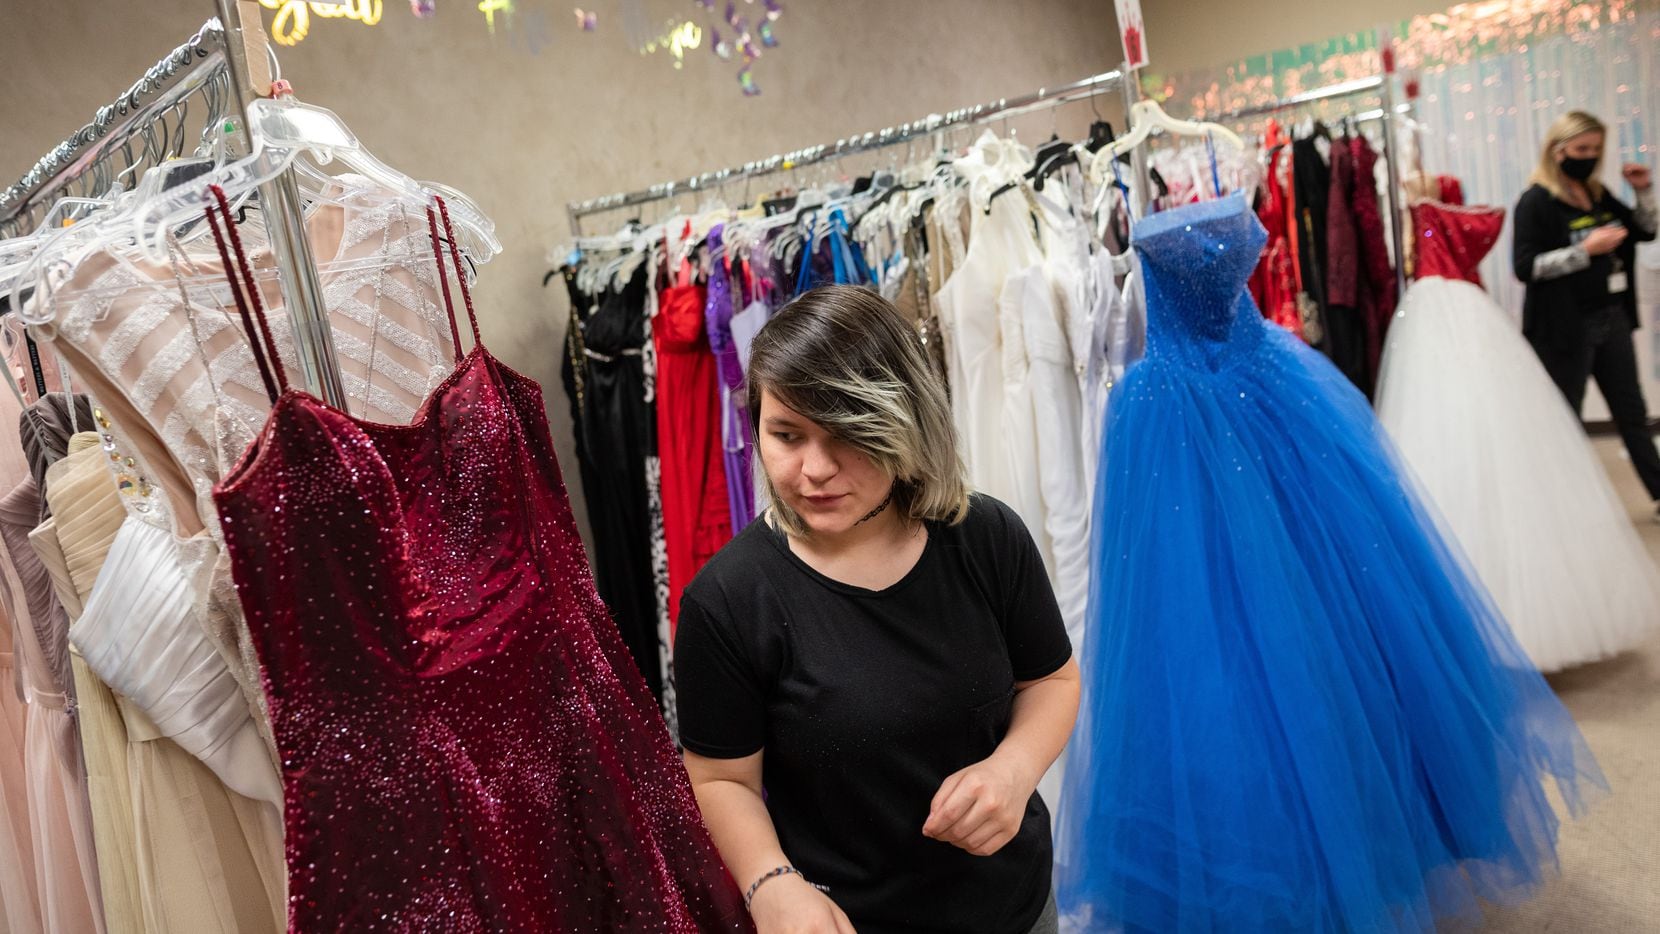 Tesoro Llanura Vinagre Vestidos de 'prom' gratis, a través de un programa de la Biblioteca Pública  de Dallas